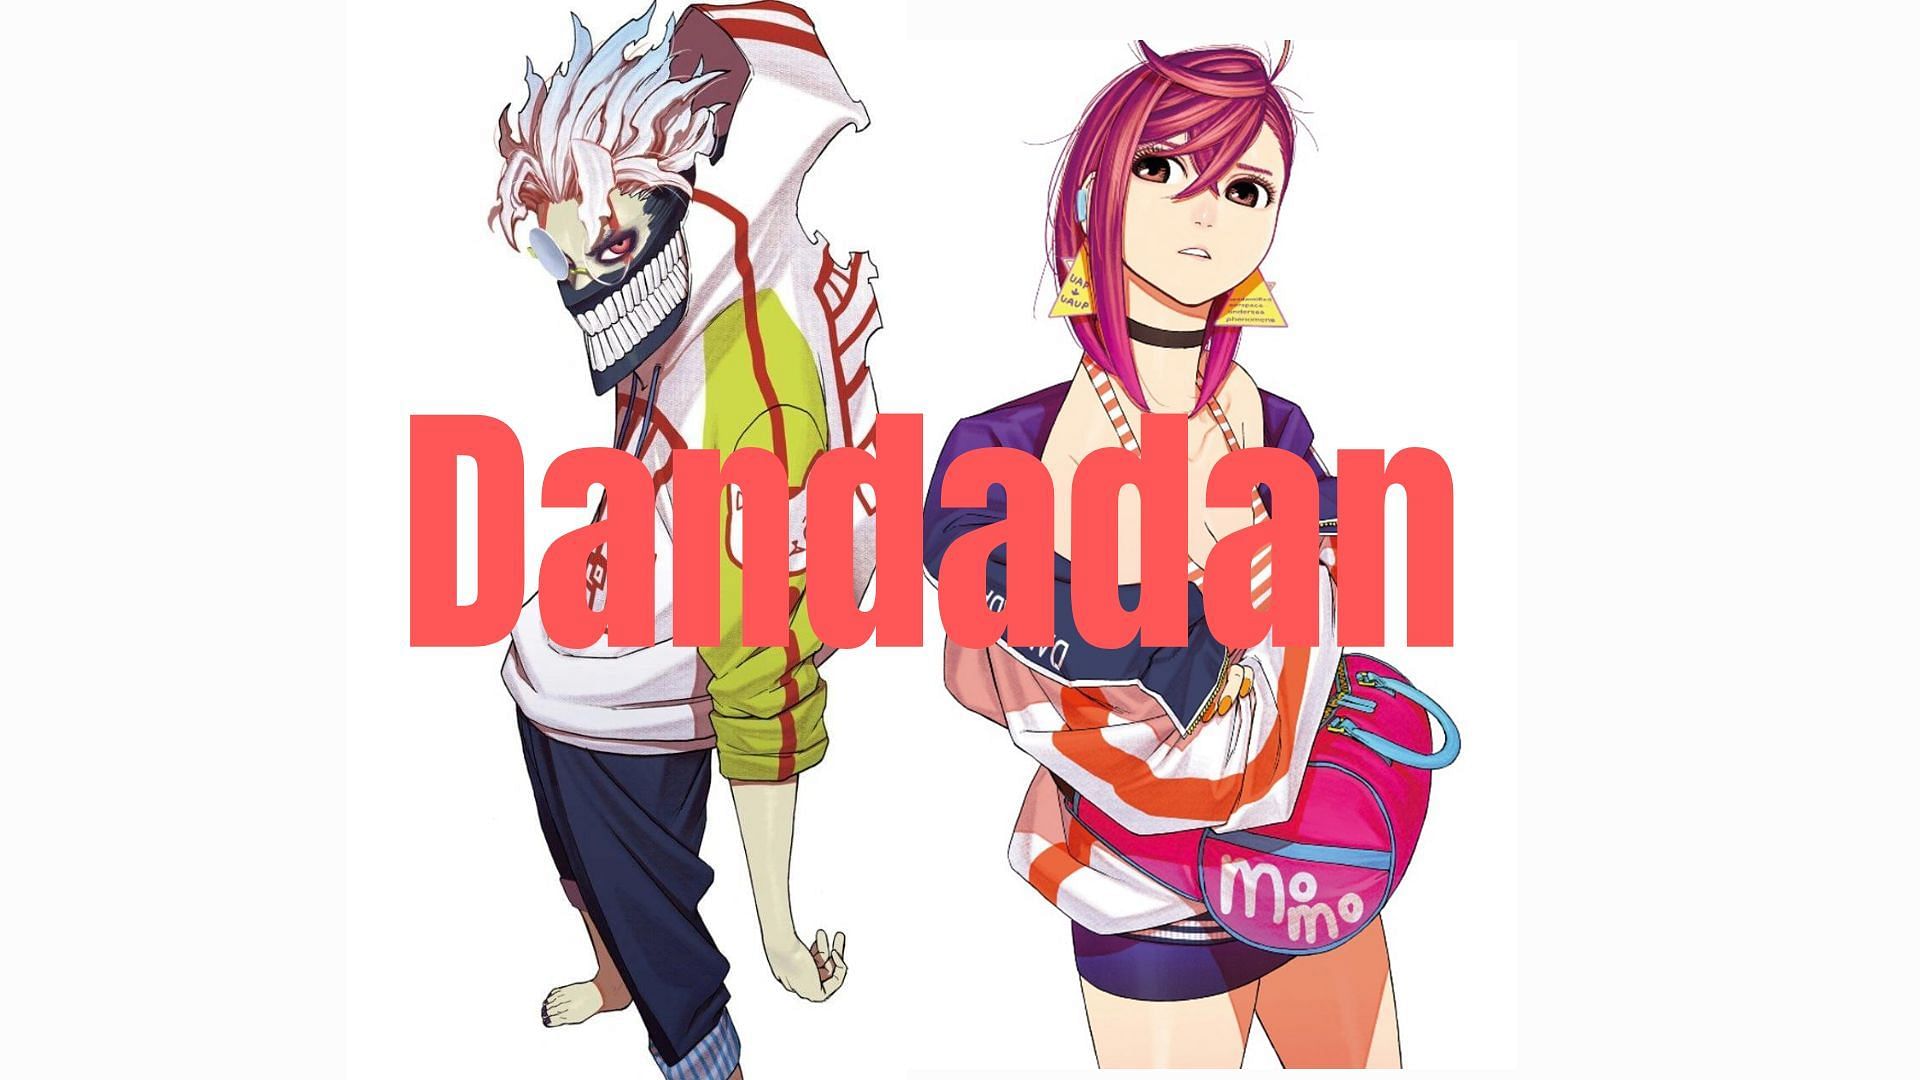 Dandadan Anime Officially Announced for 2024!